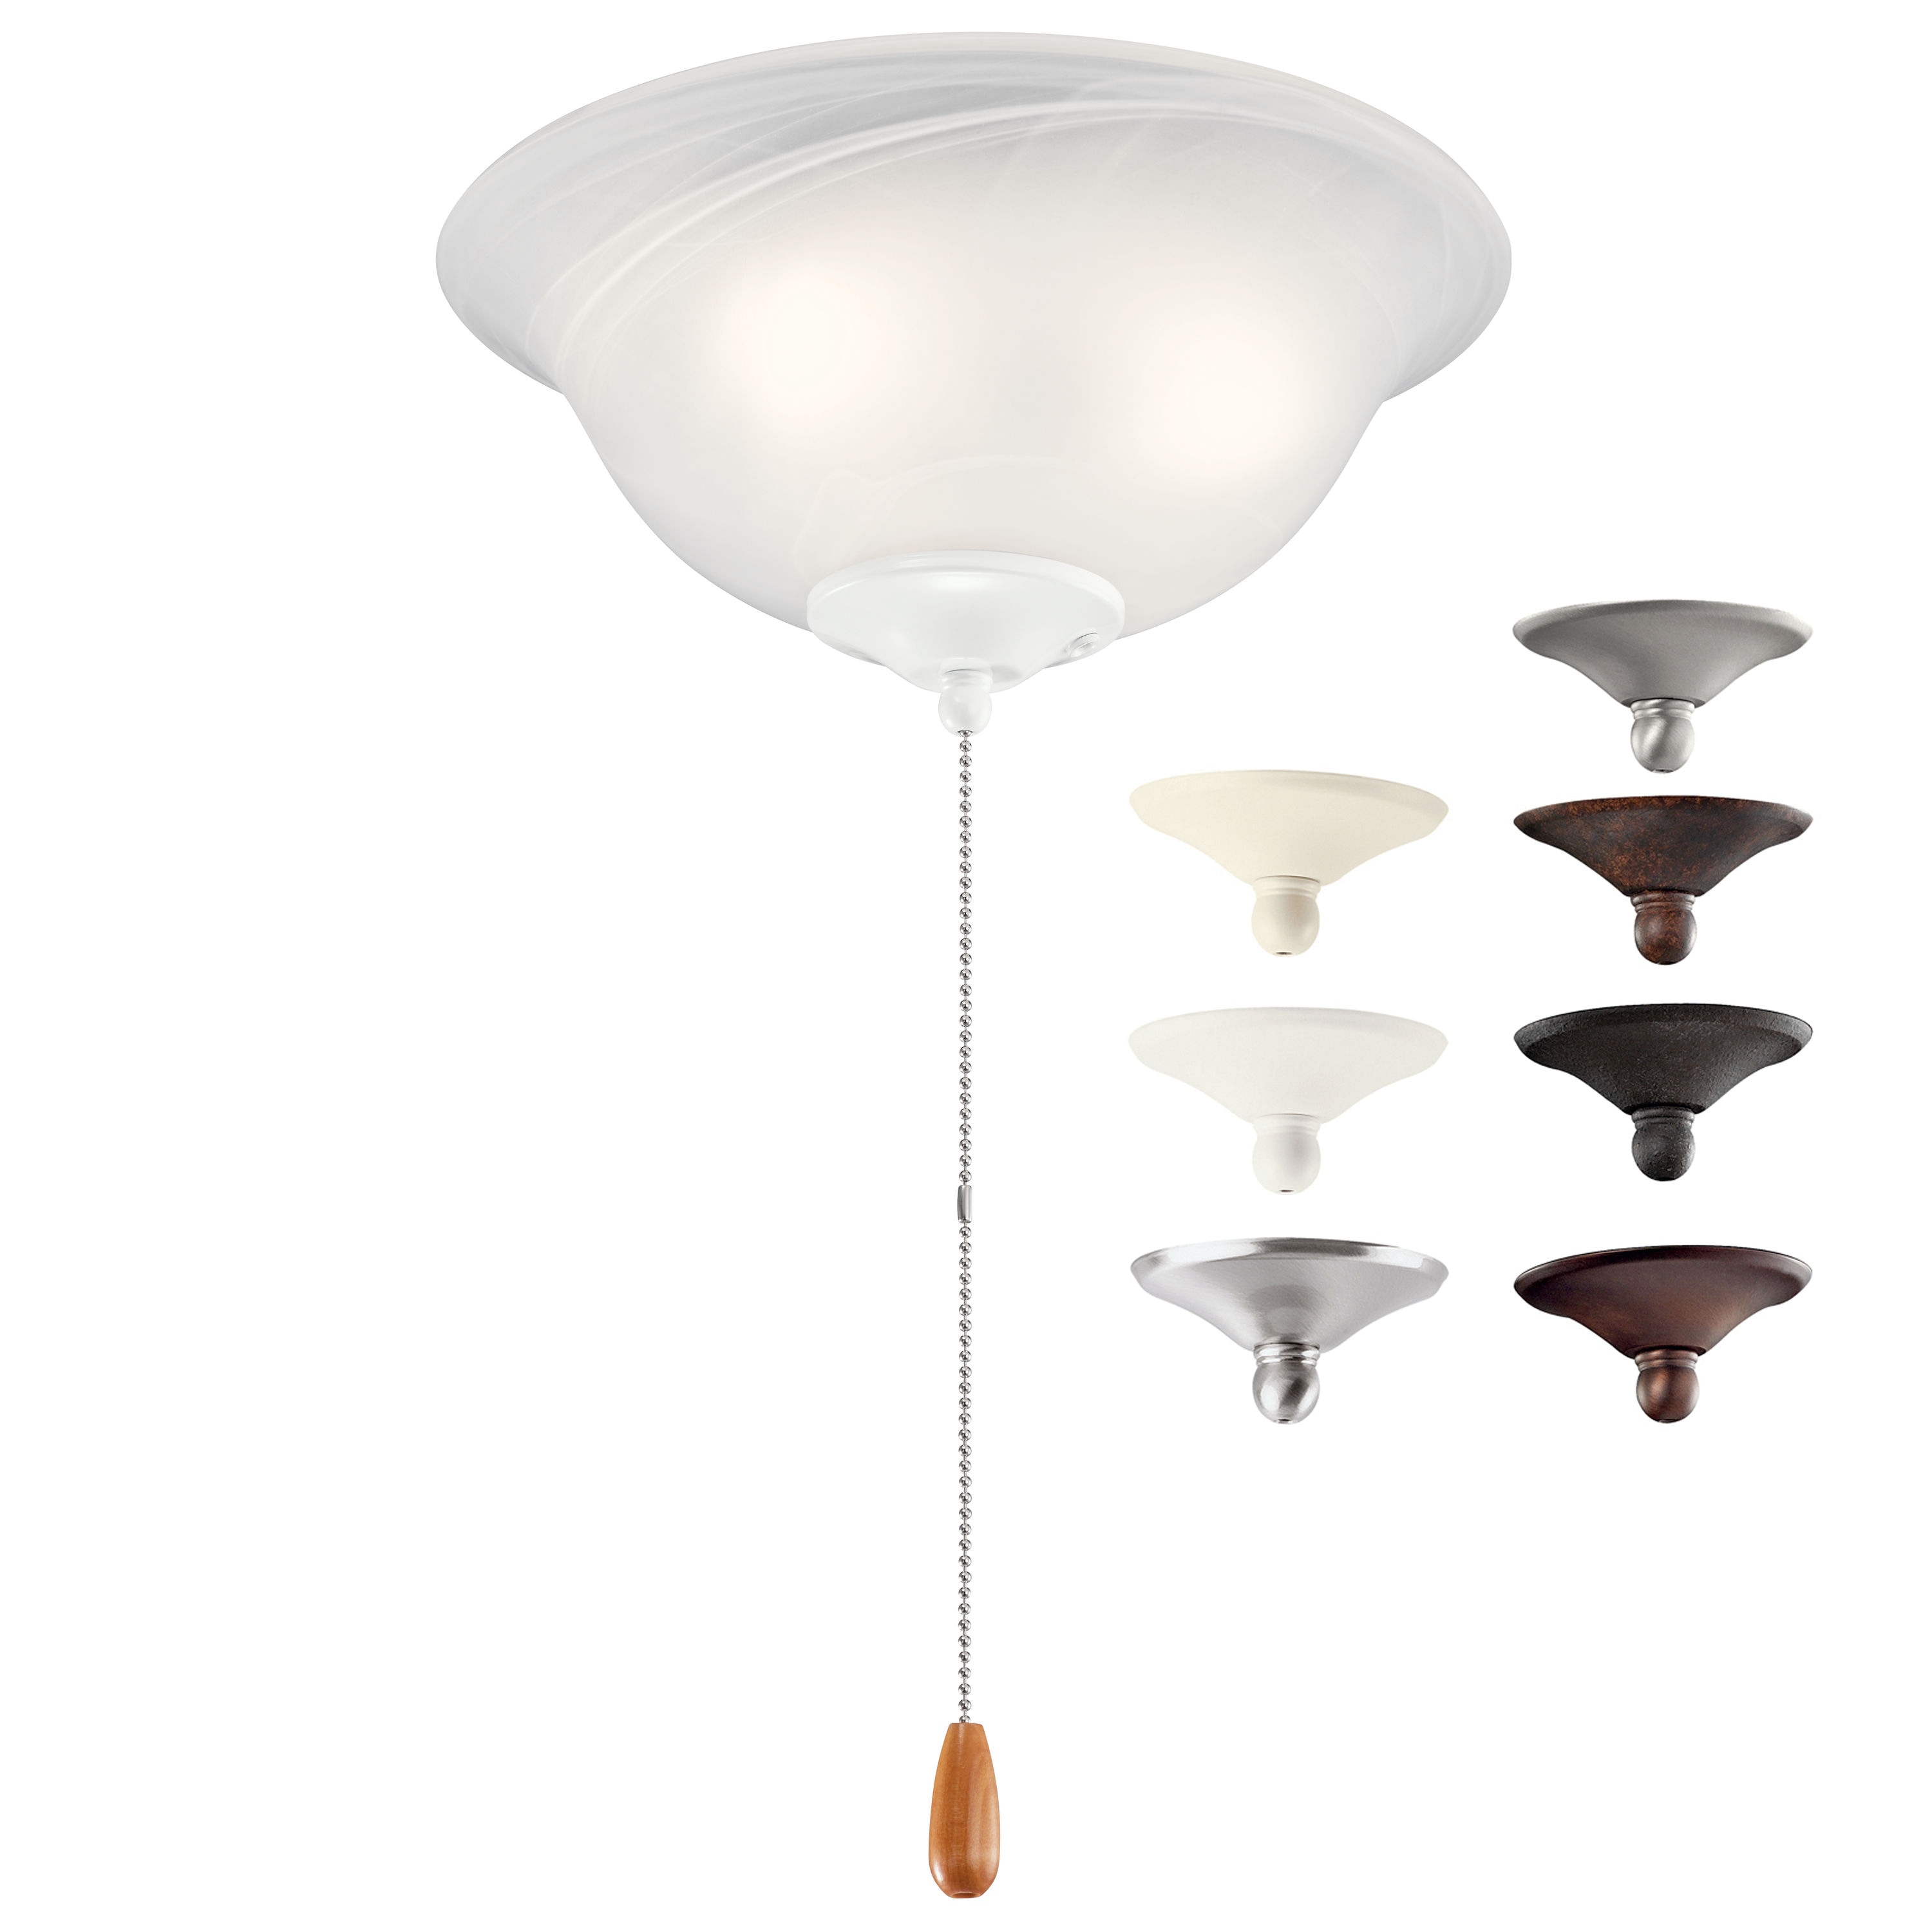 Kichler 11-in 3-Light Multiple LED Ceiling Fan Light Kit